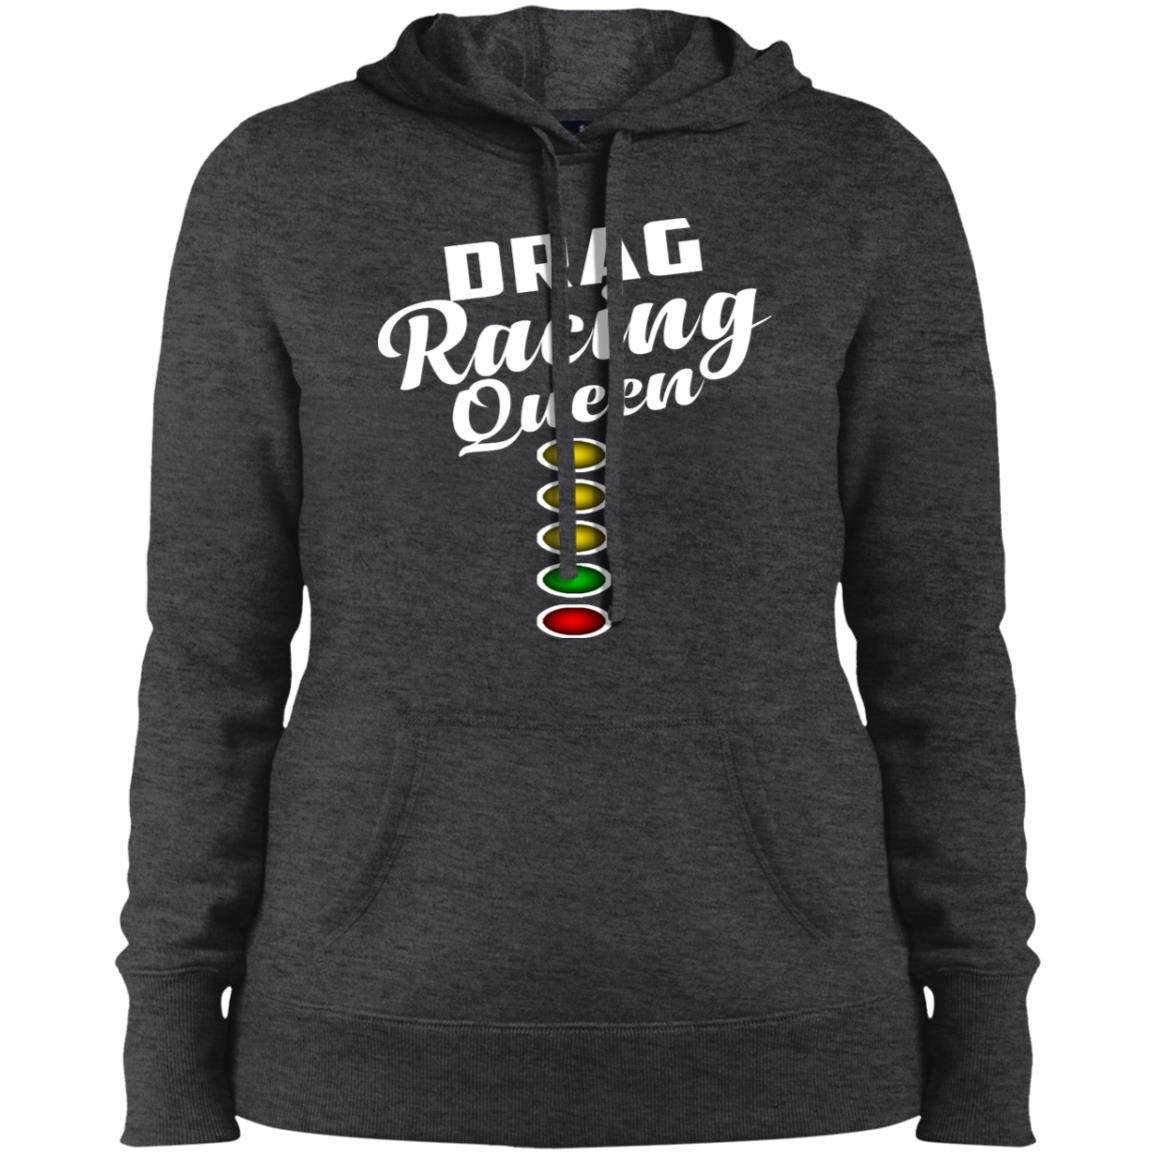 Drag racing hoodie